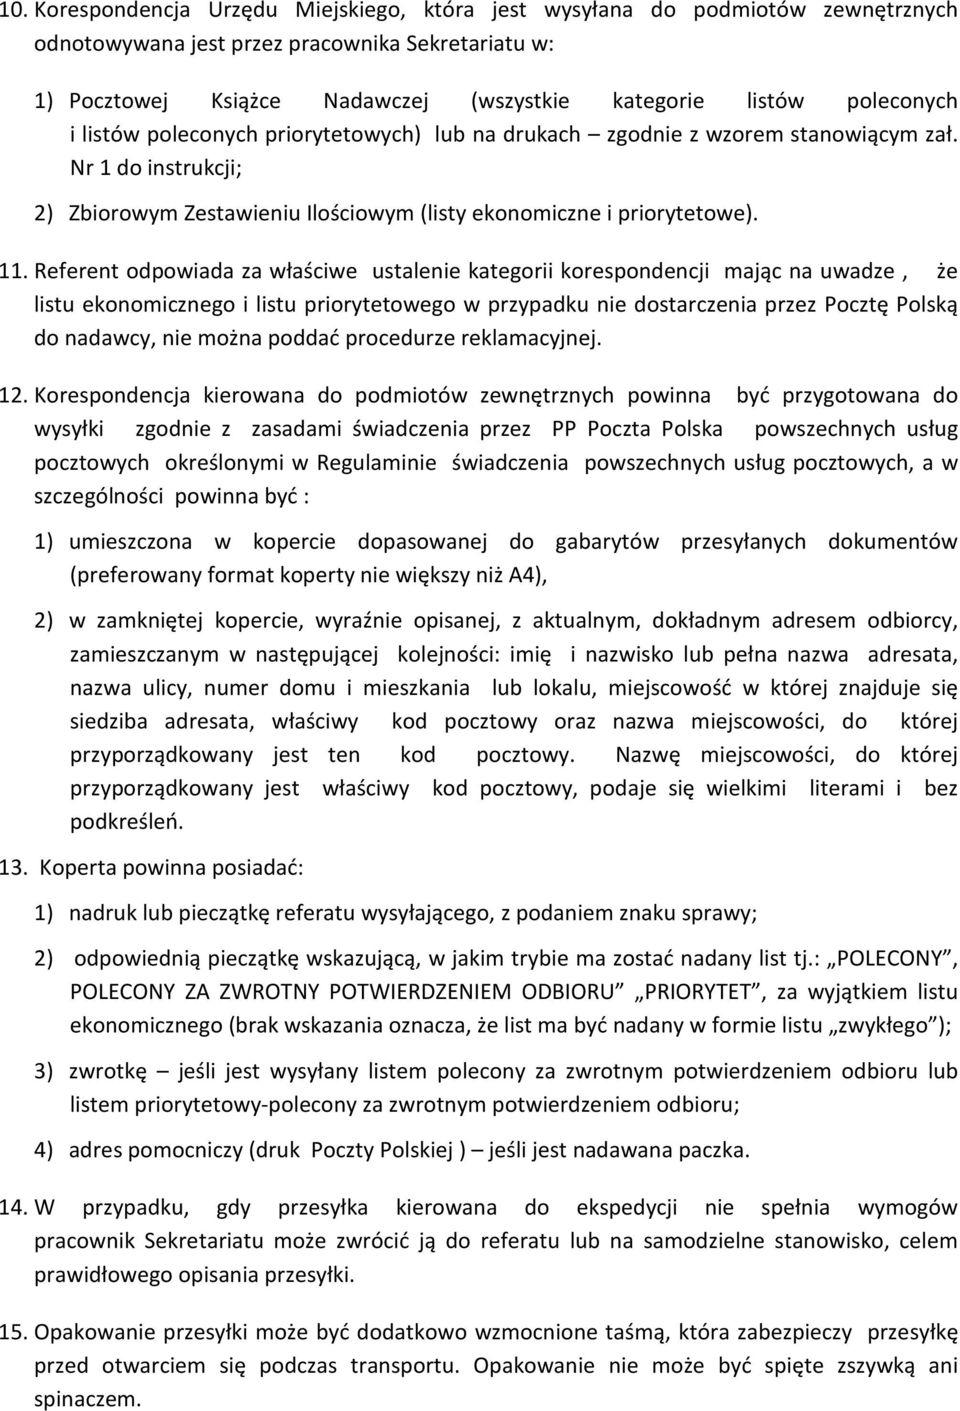 Referent odpowiada za właściwe ustalenie kategorii korespondencji mając na uwadze, że listu ekonomicznego i listu priorytetowego w przypadku nie dostarczenia przez Pocztę Polską do nadawcy, nie można